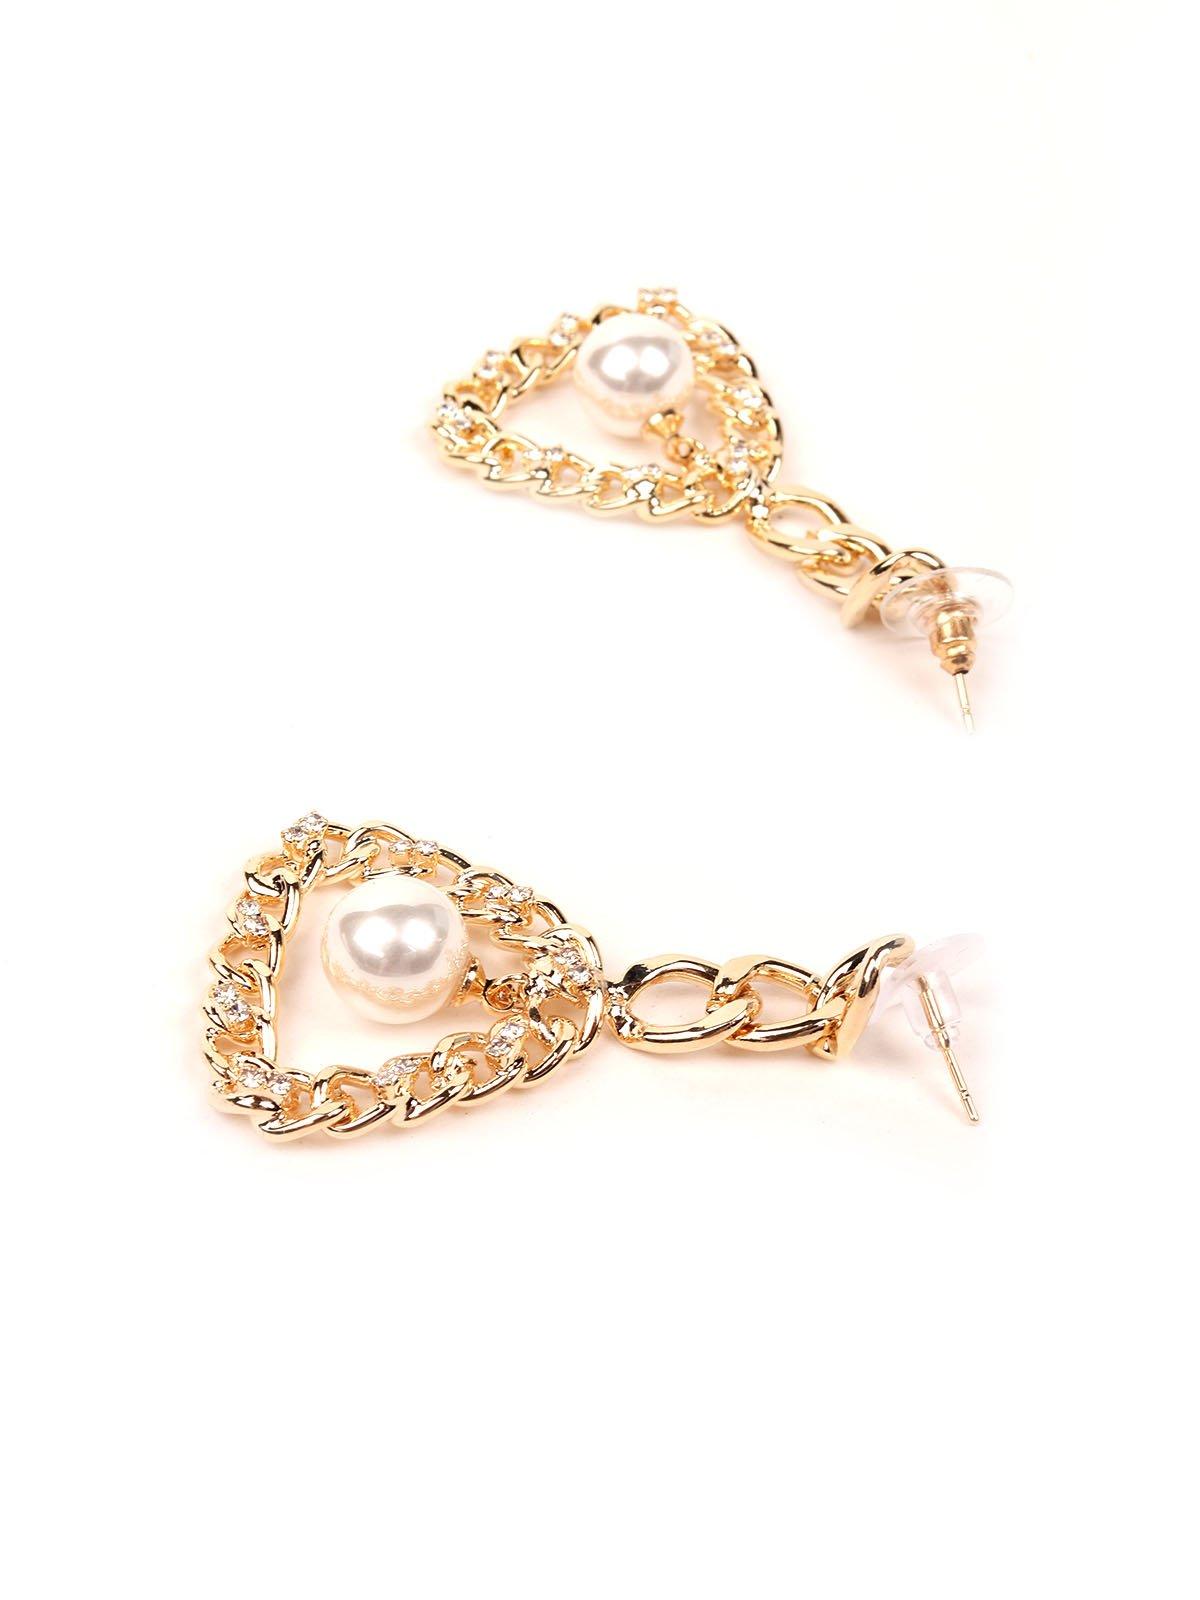 Interlinked chained pearl drop earrings - Odette